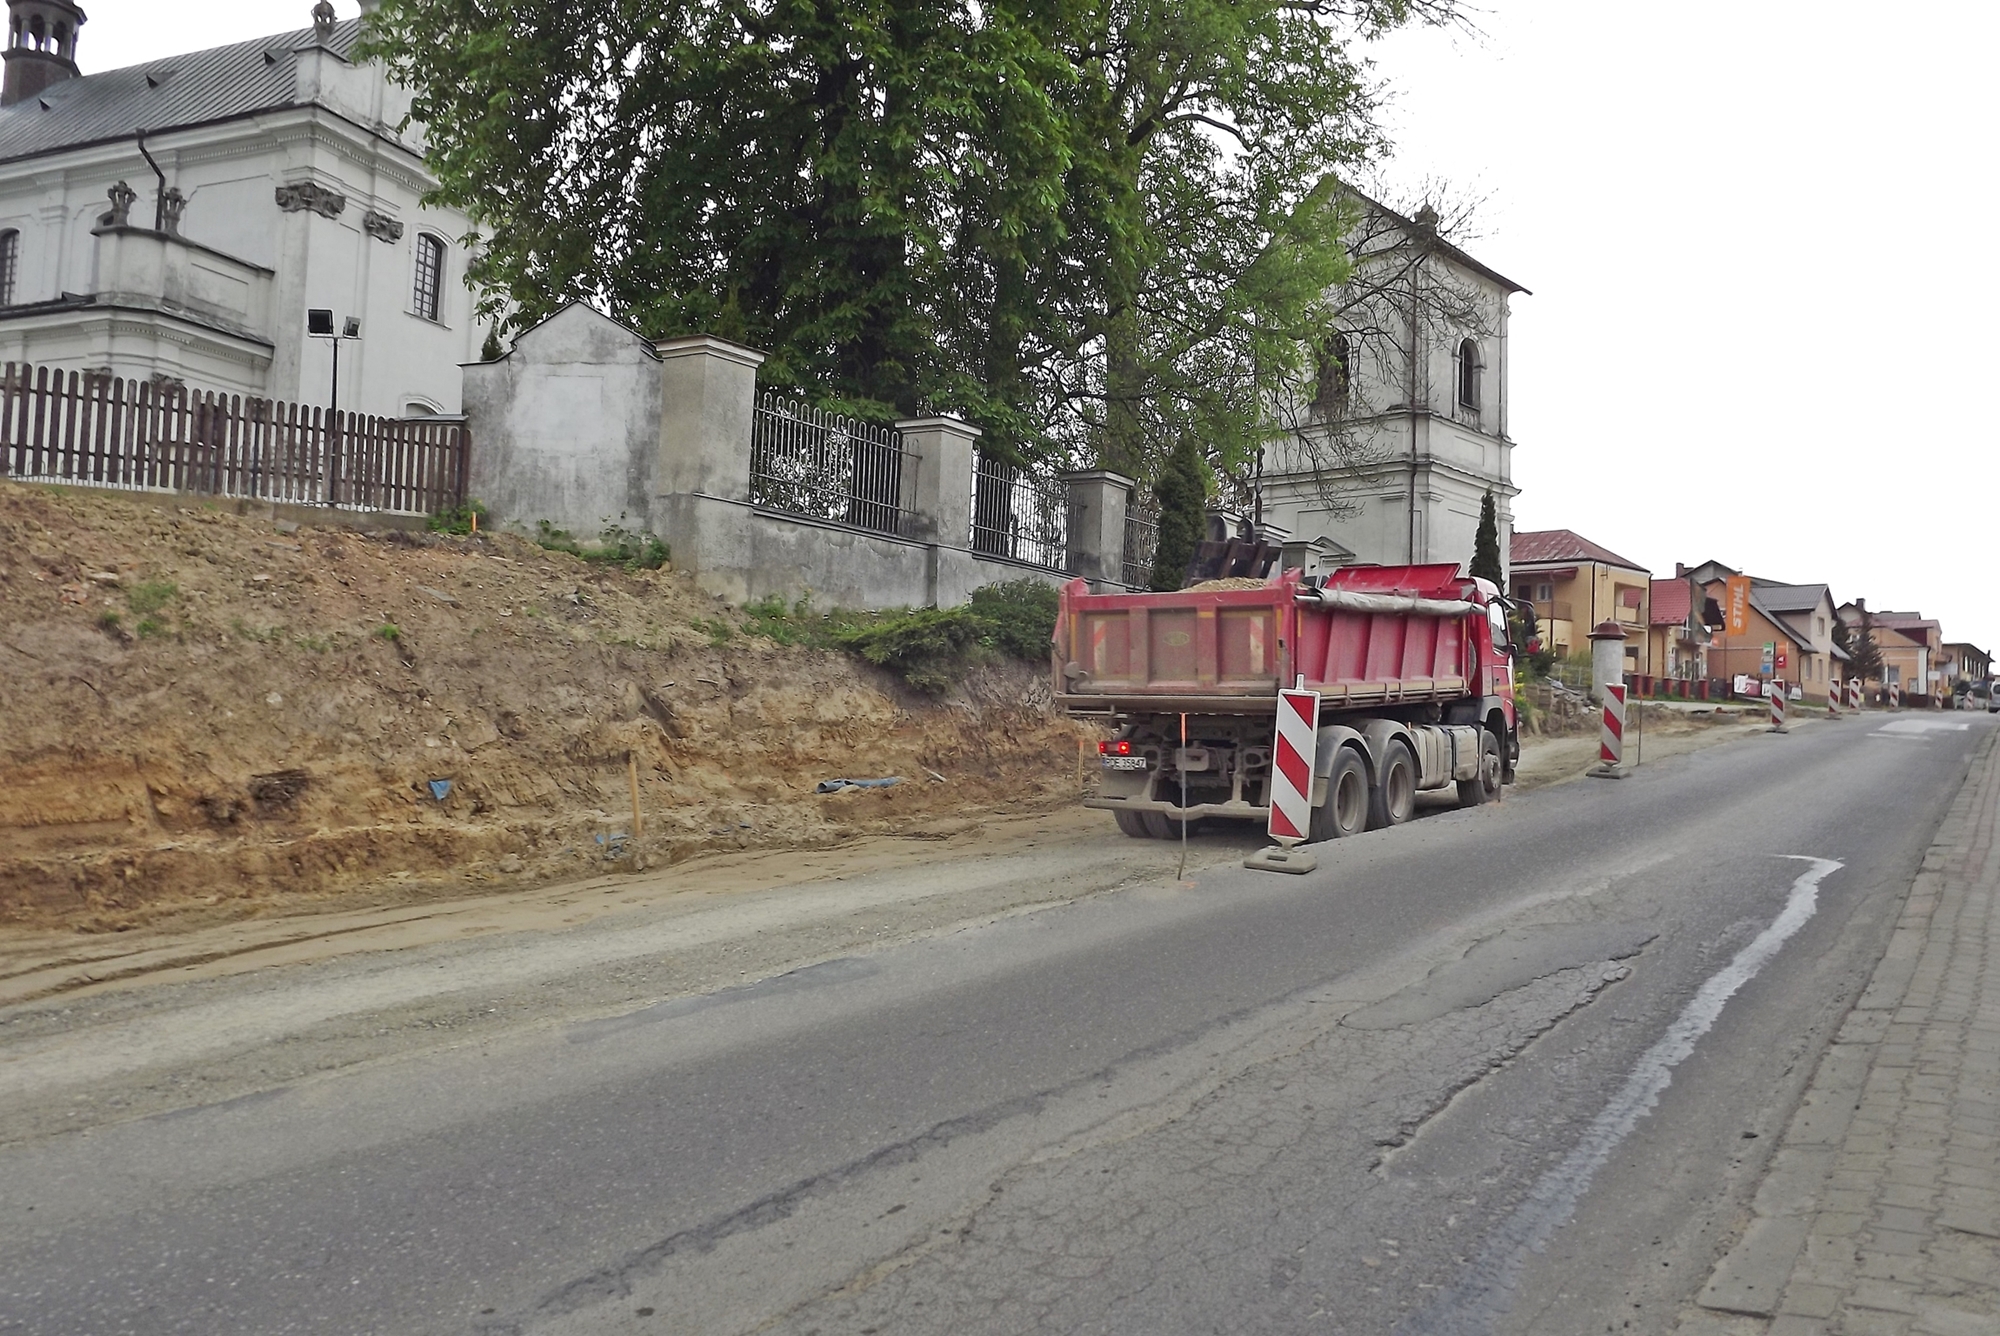 Zdjęcie przedstawia przebudowywaną drogę wojewódzką koło kościoła parafialnego w Tarnogrodzie.